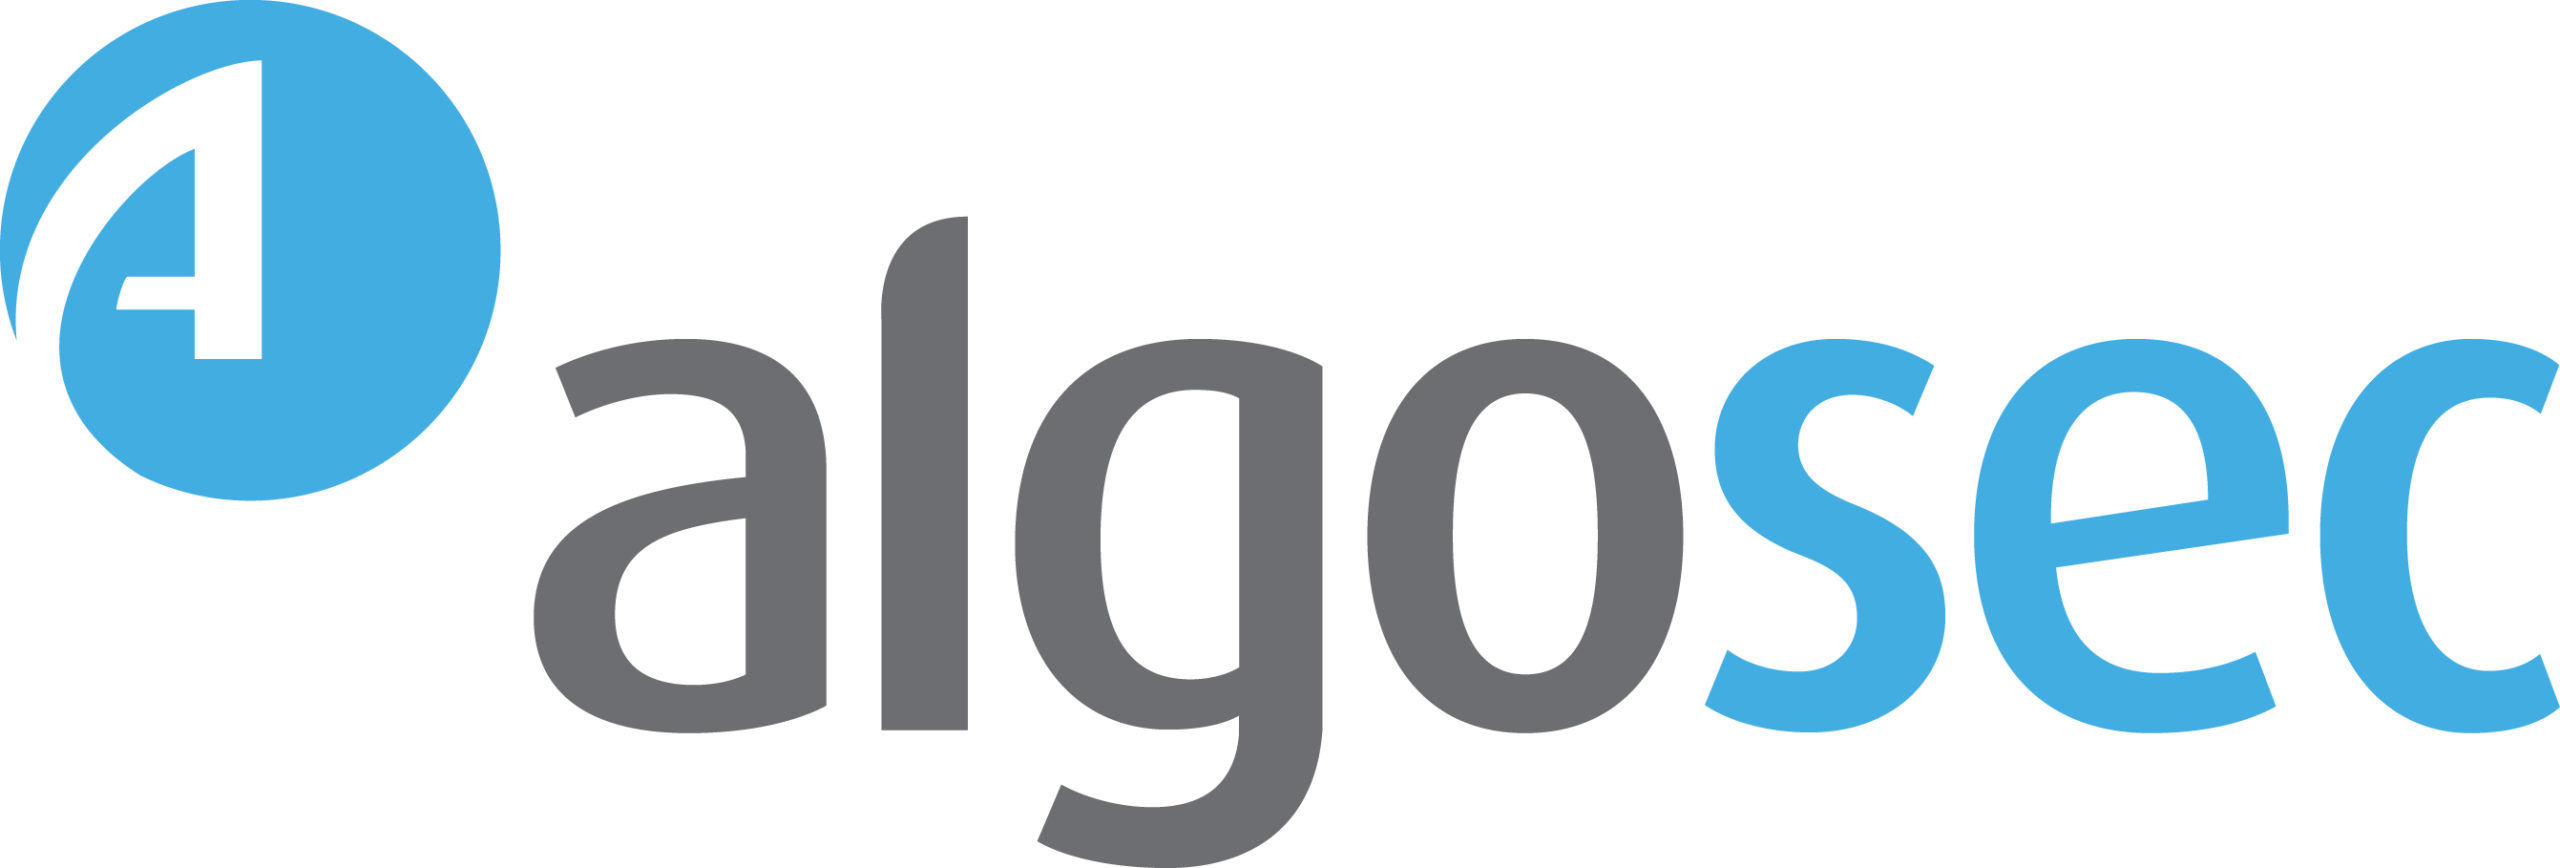 AlgoSec Logo HI-Res